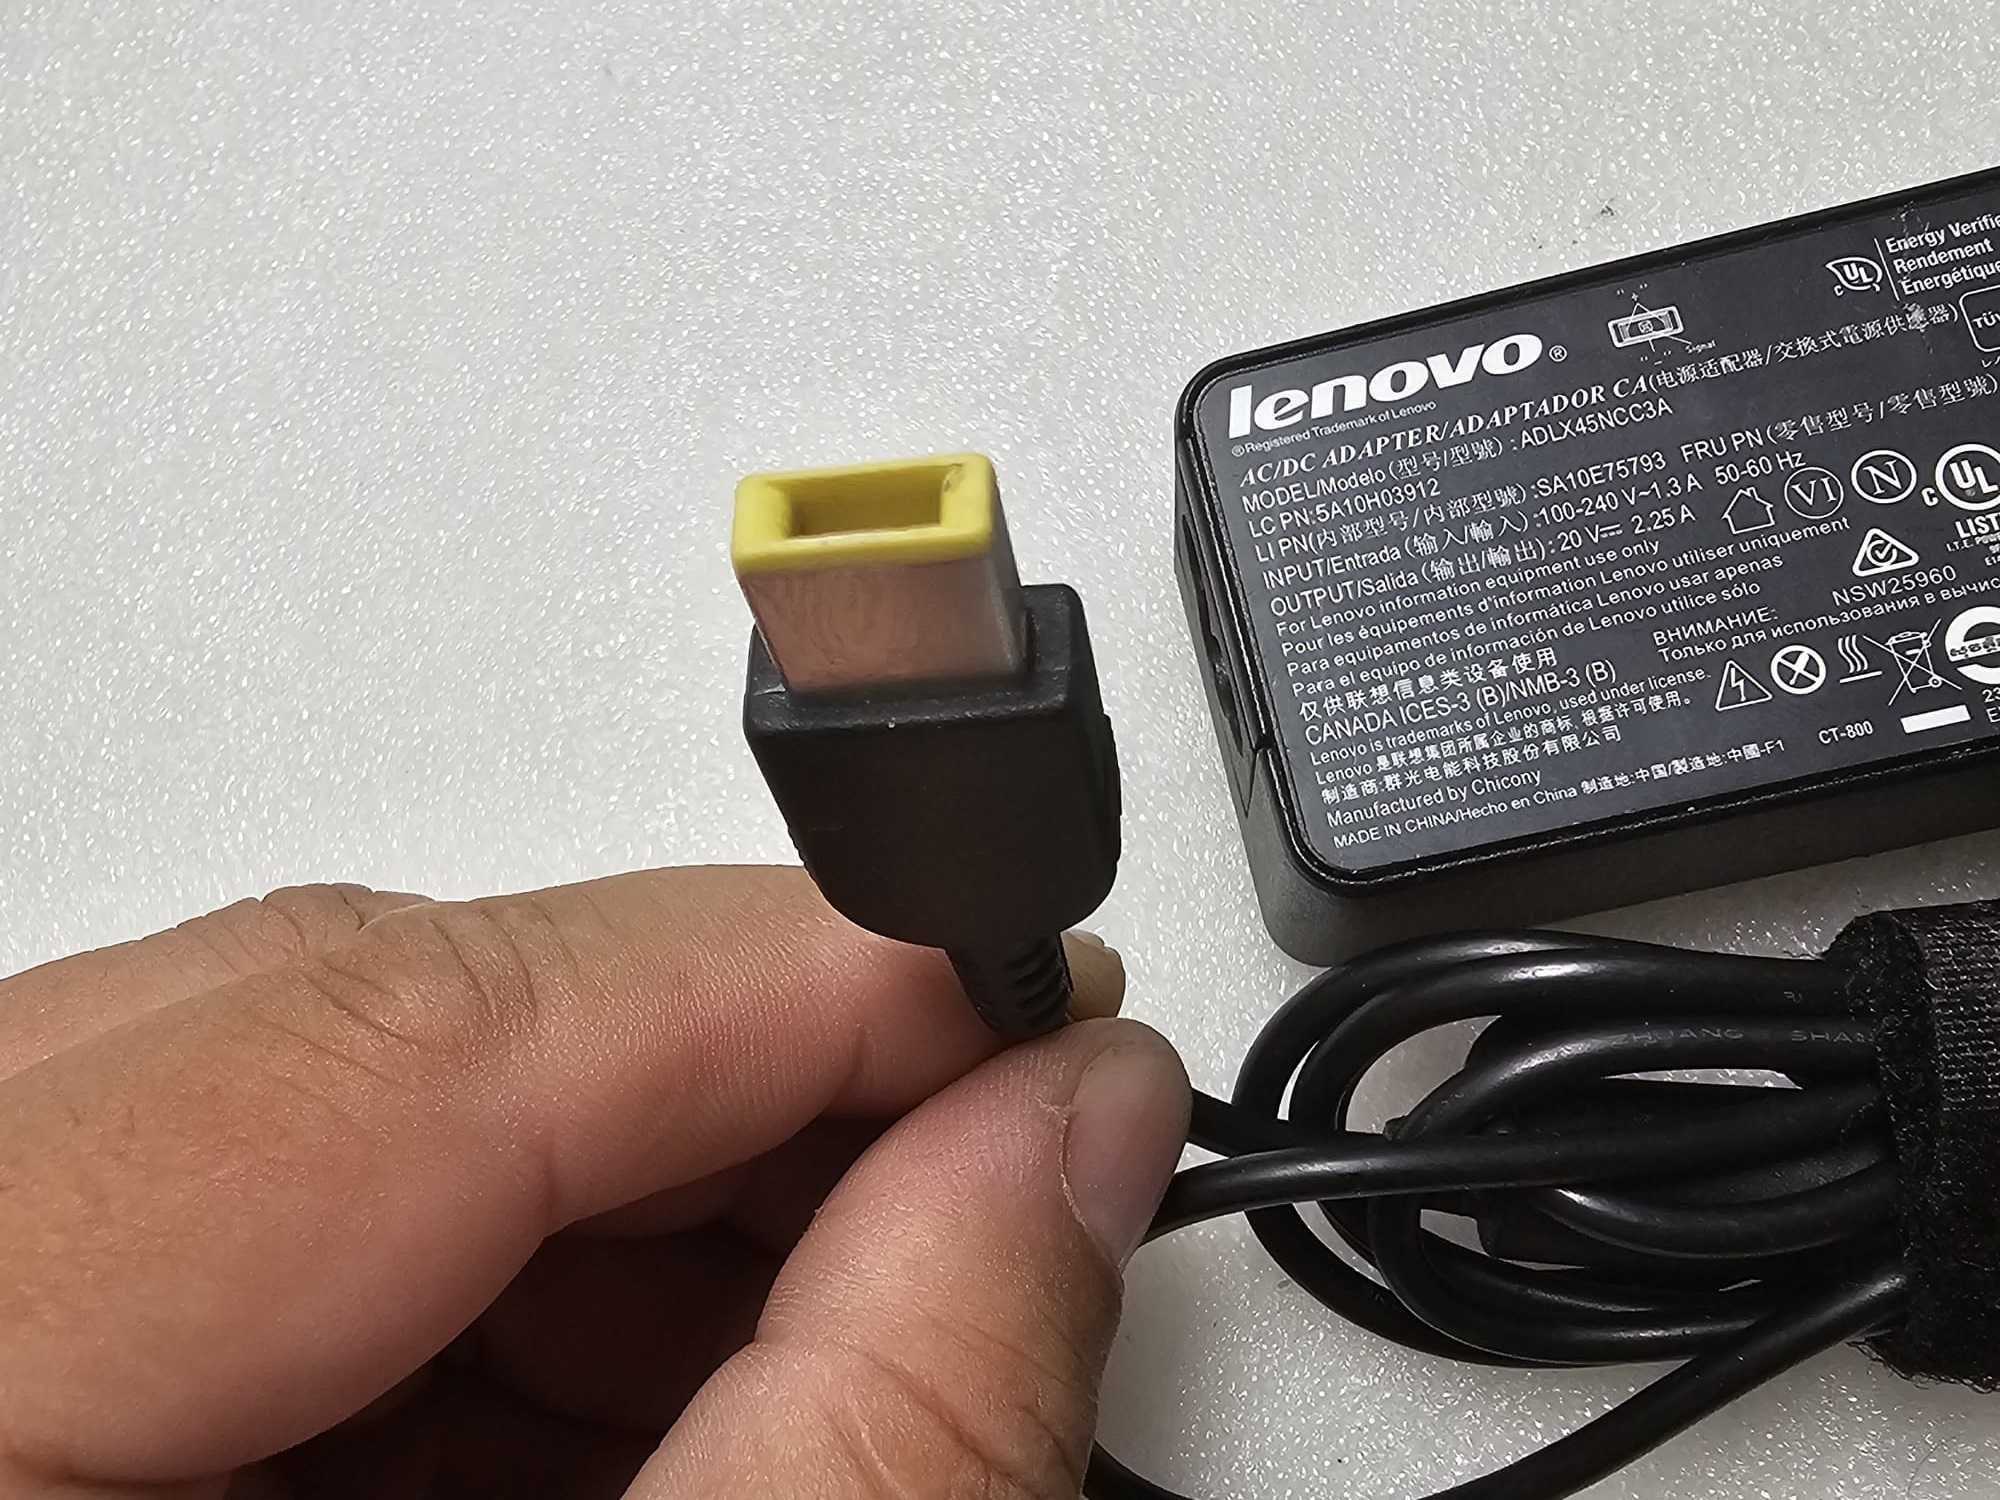 Incarcator laptop Lenovo 20V 2.25A 45W MUFA USB - poze reale